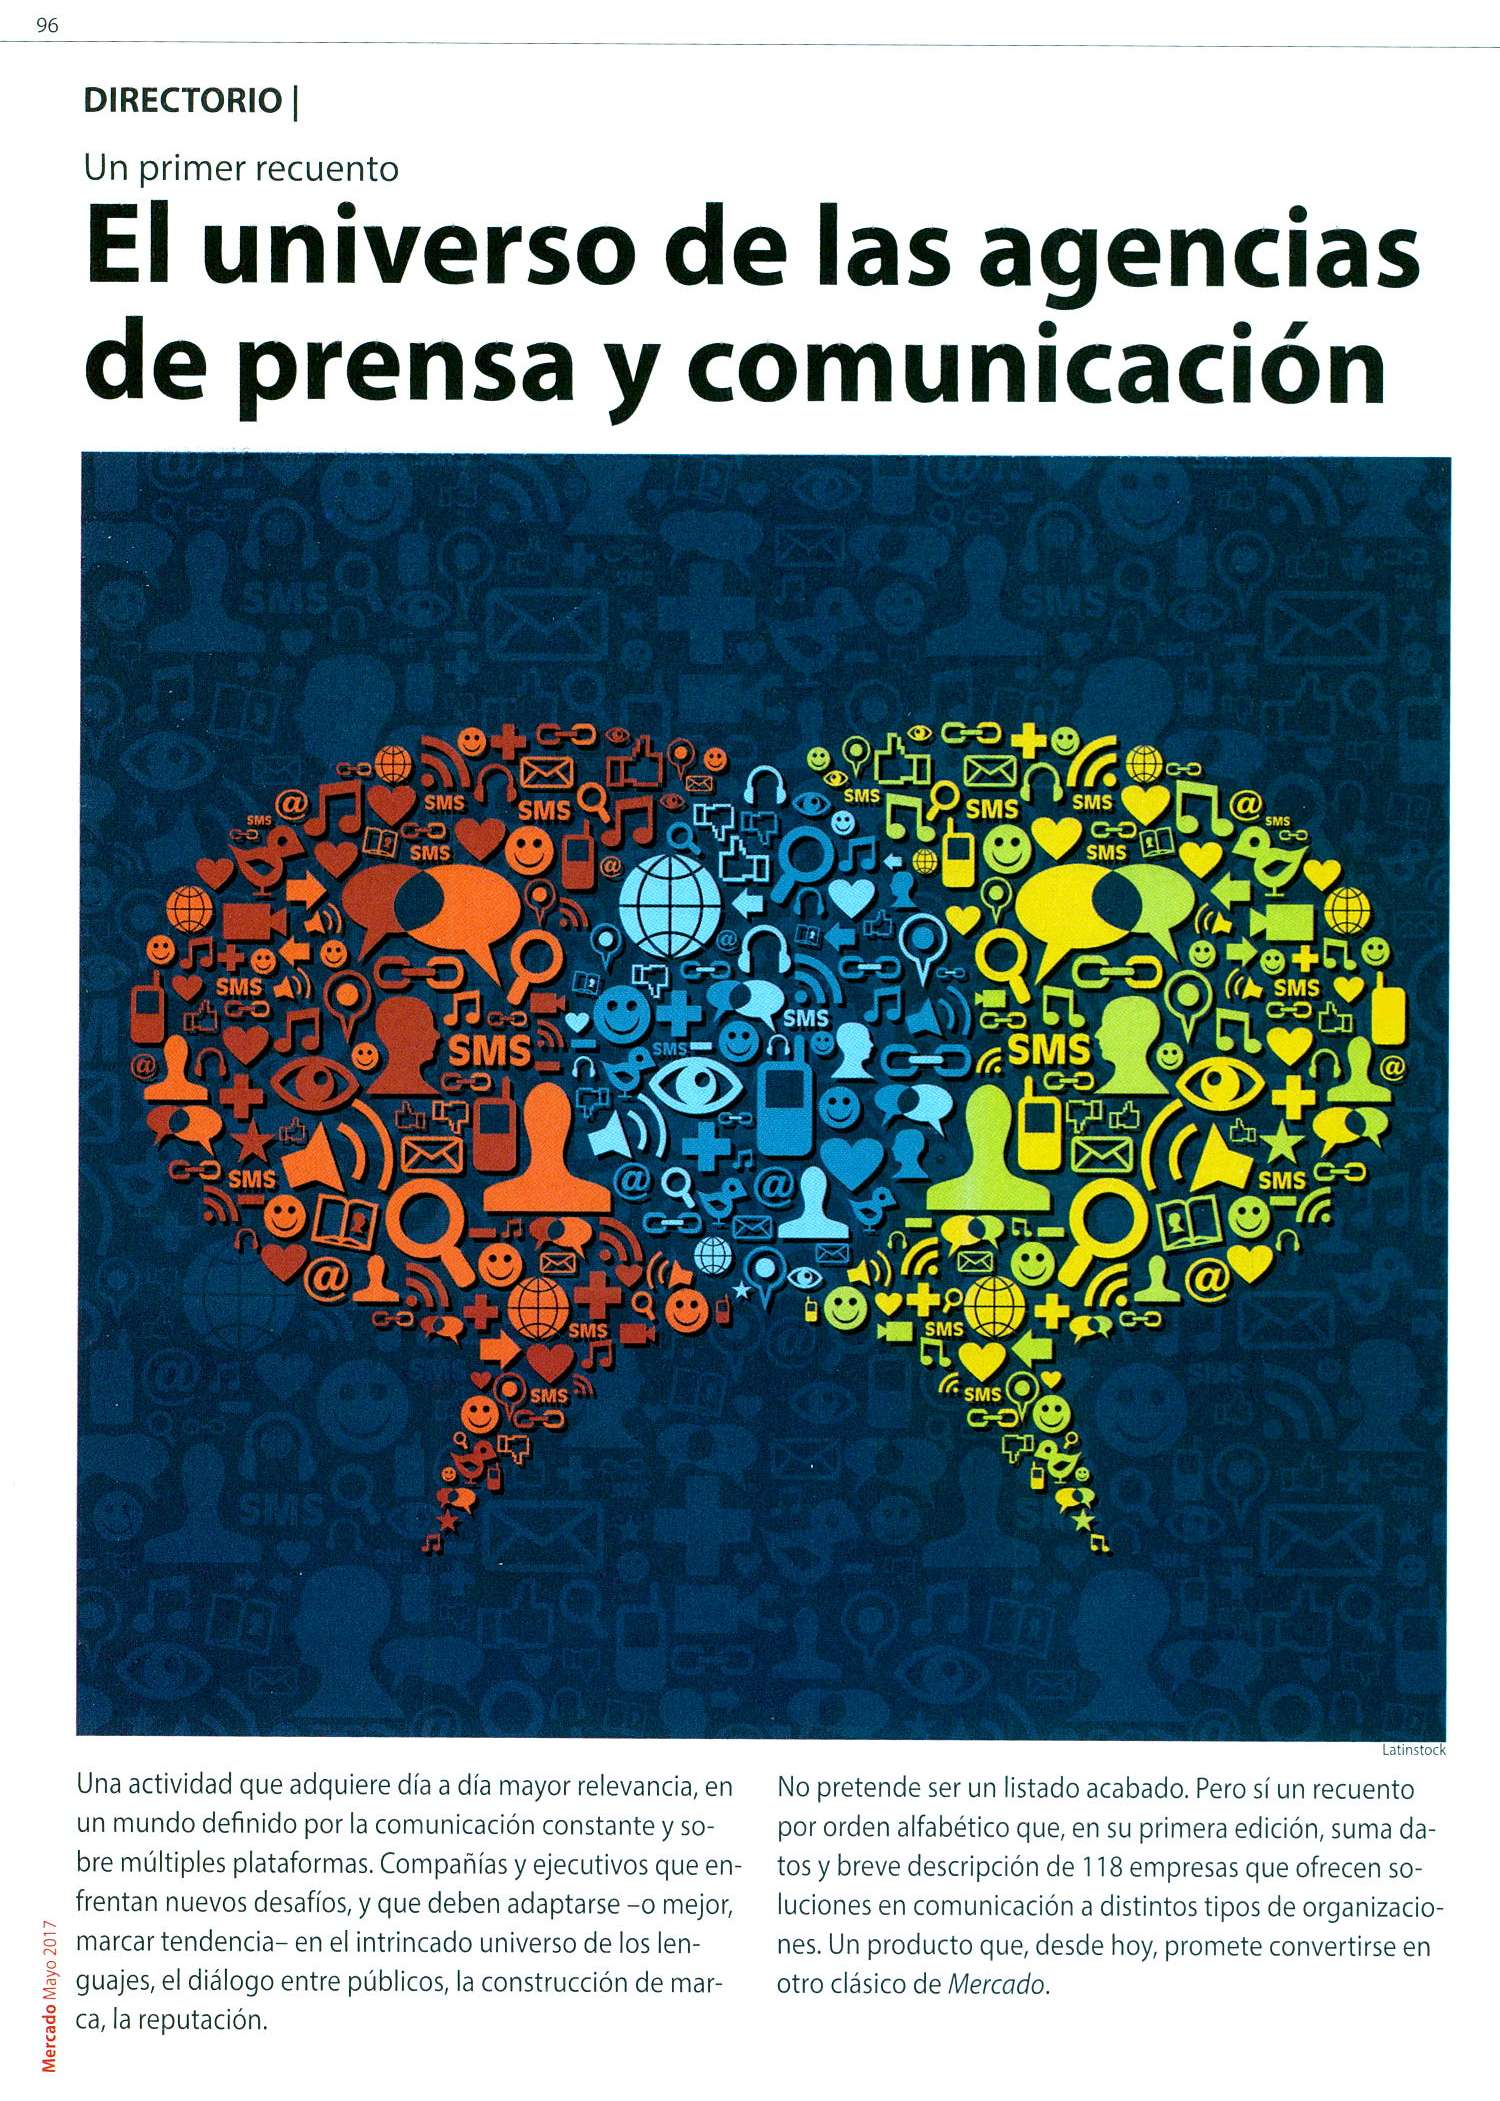 Agradecemos a la revista Mercado que acaba de publicar su especial de Agencias de Prensa y Comunicación y nos incluye.